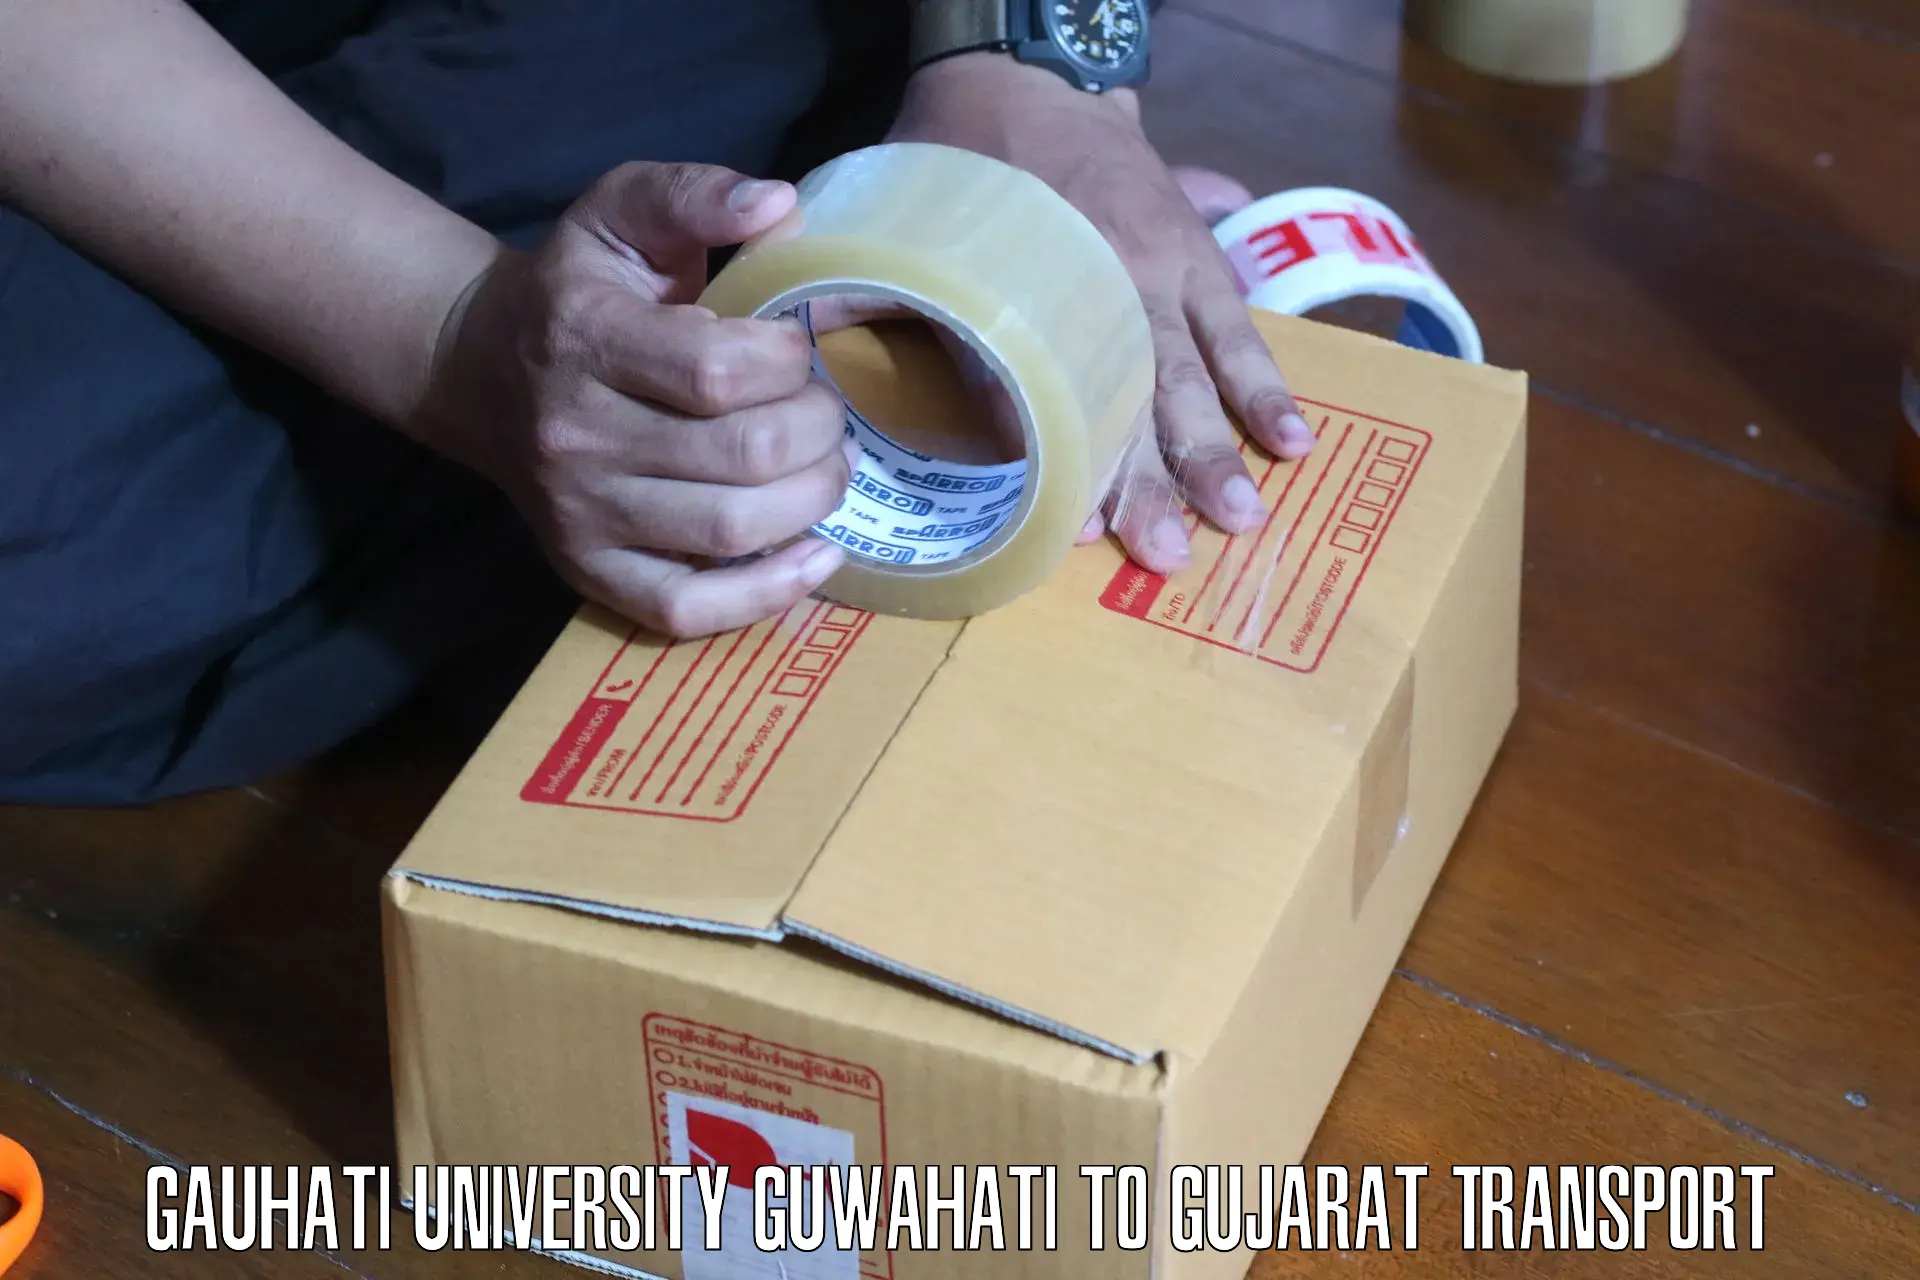 Transport in sharing Gauhati University Guwahati to Navsari